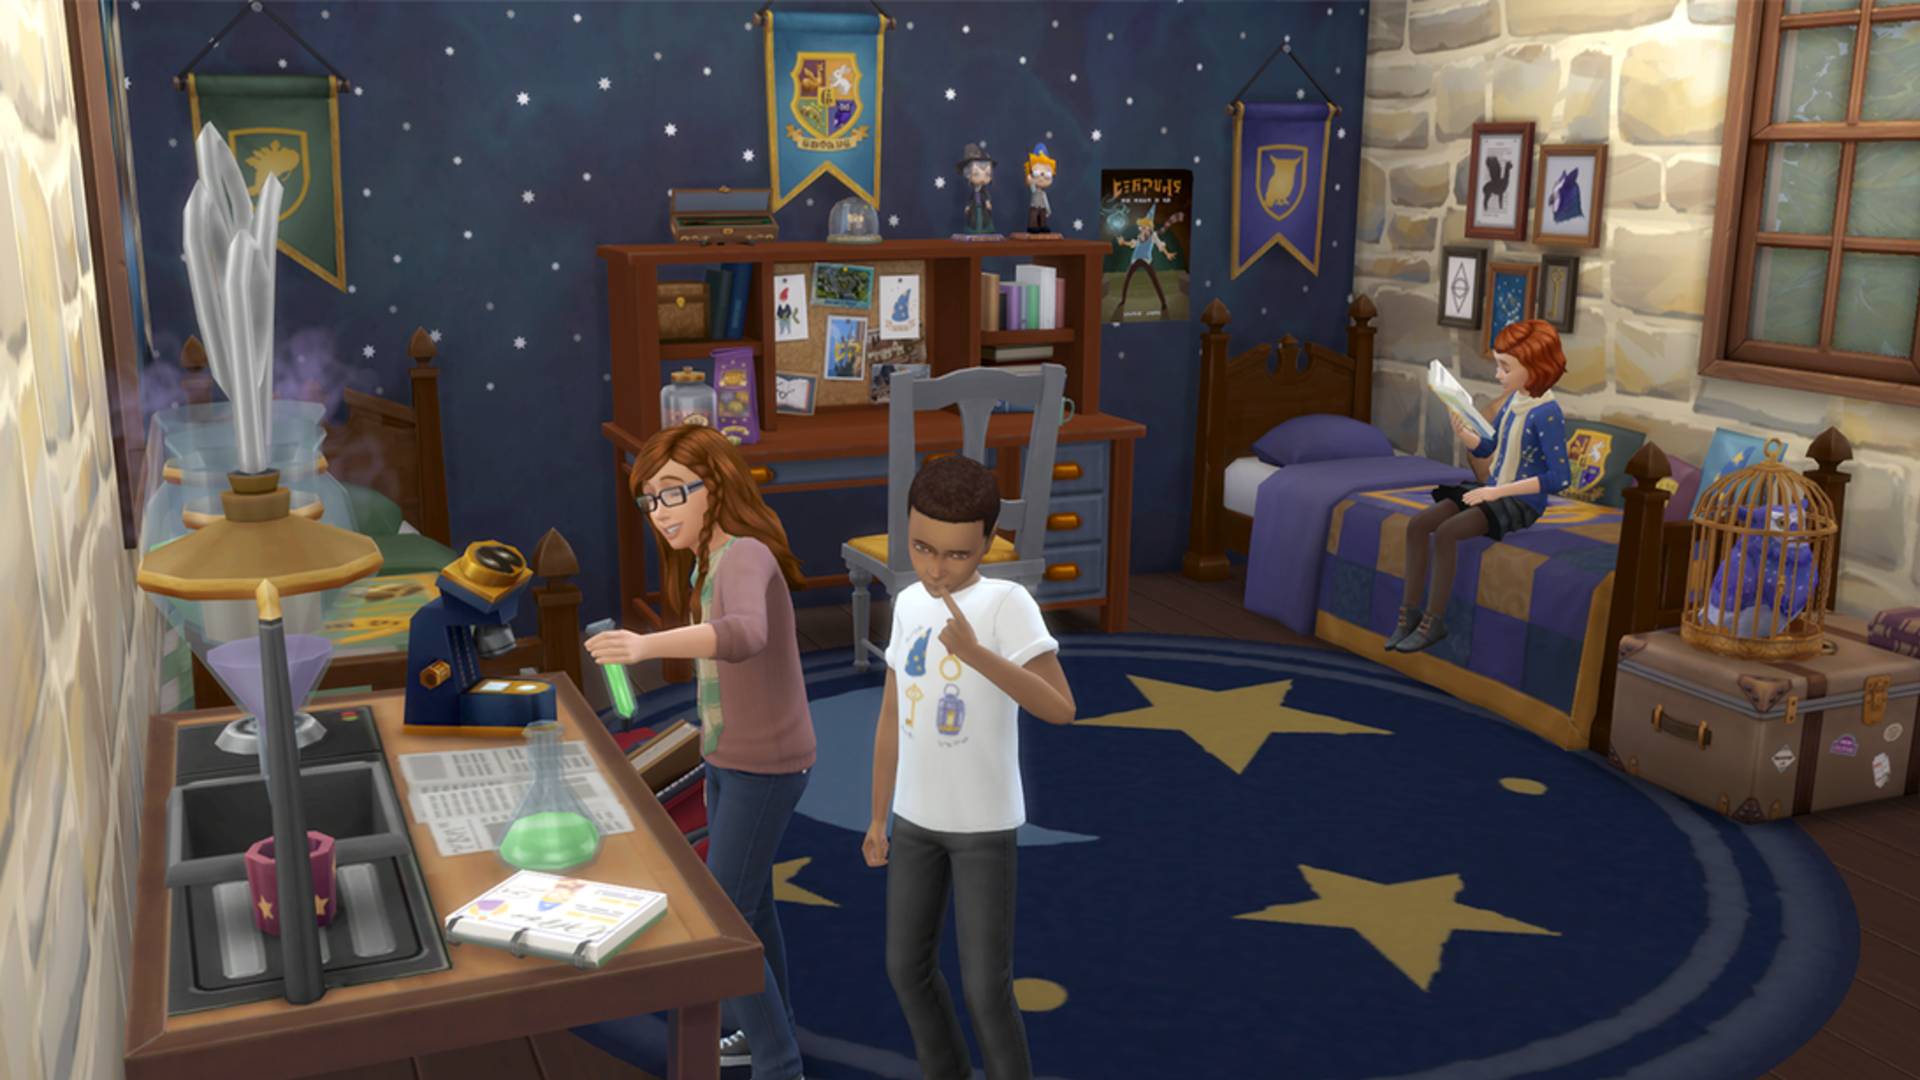 Sims 4 CC: la habitación de un niño amueblada con artículos y decoraciones con temas de magos, incluida una pancarta que muestra el escudo de Harry Potter Hogwarts.